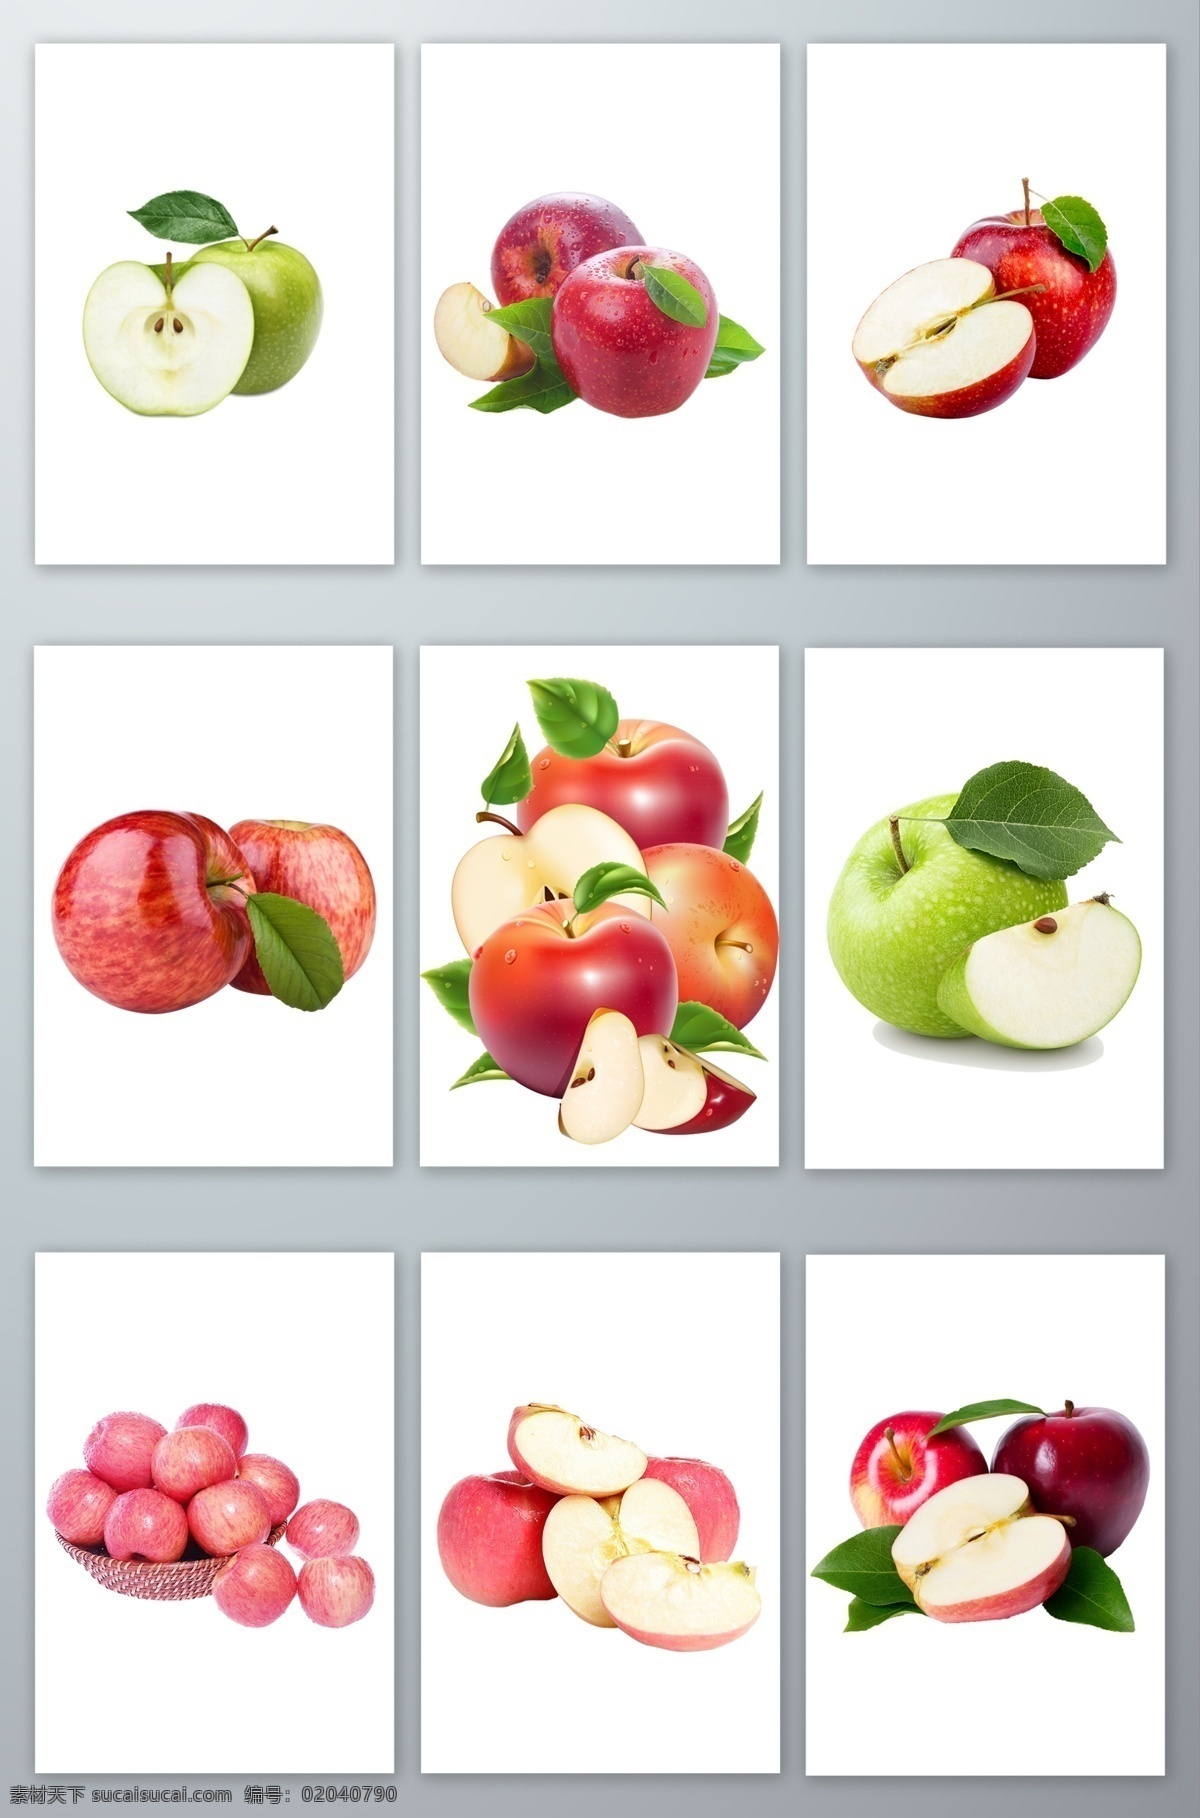 水果 苹果 矢量 水果苹果矢量 苹果素材 苹果矢量素材 酸甜苹果 富士康苹果 红彤彤苹果 酸甜可口苹果 分层